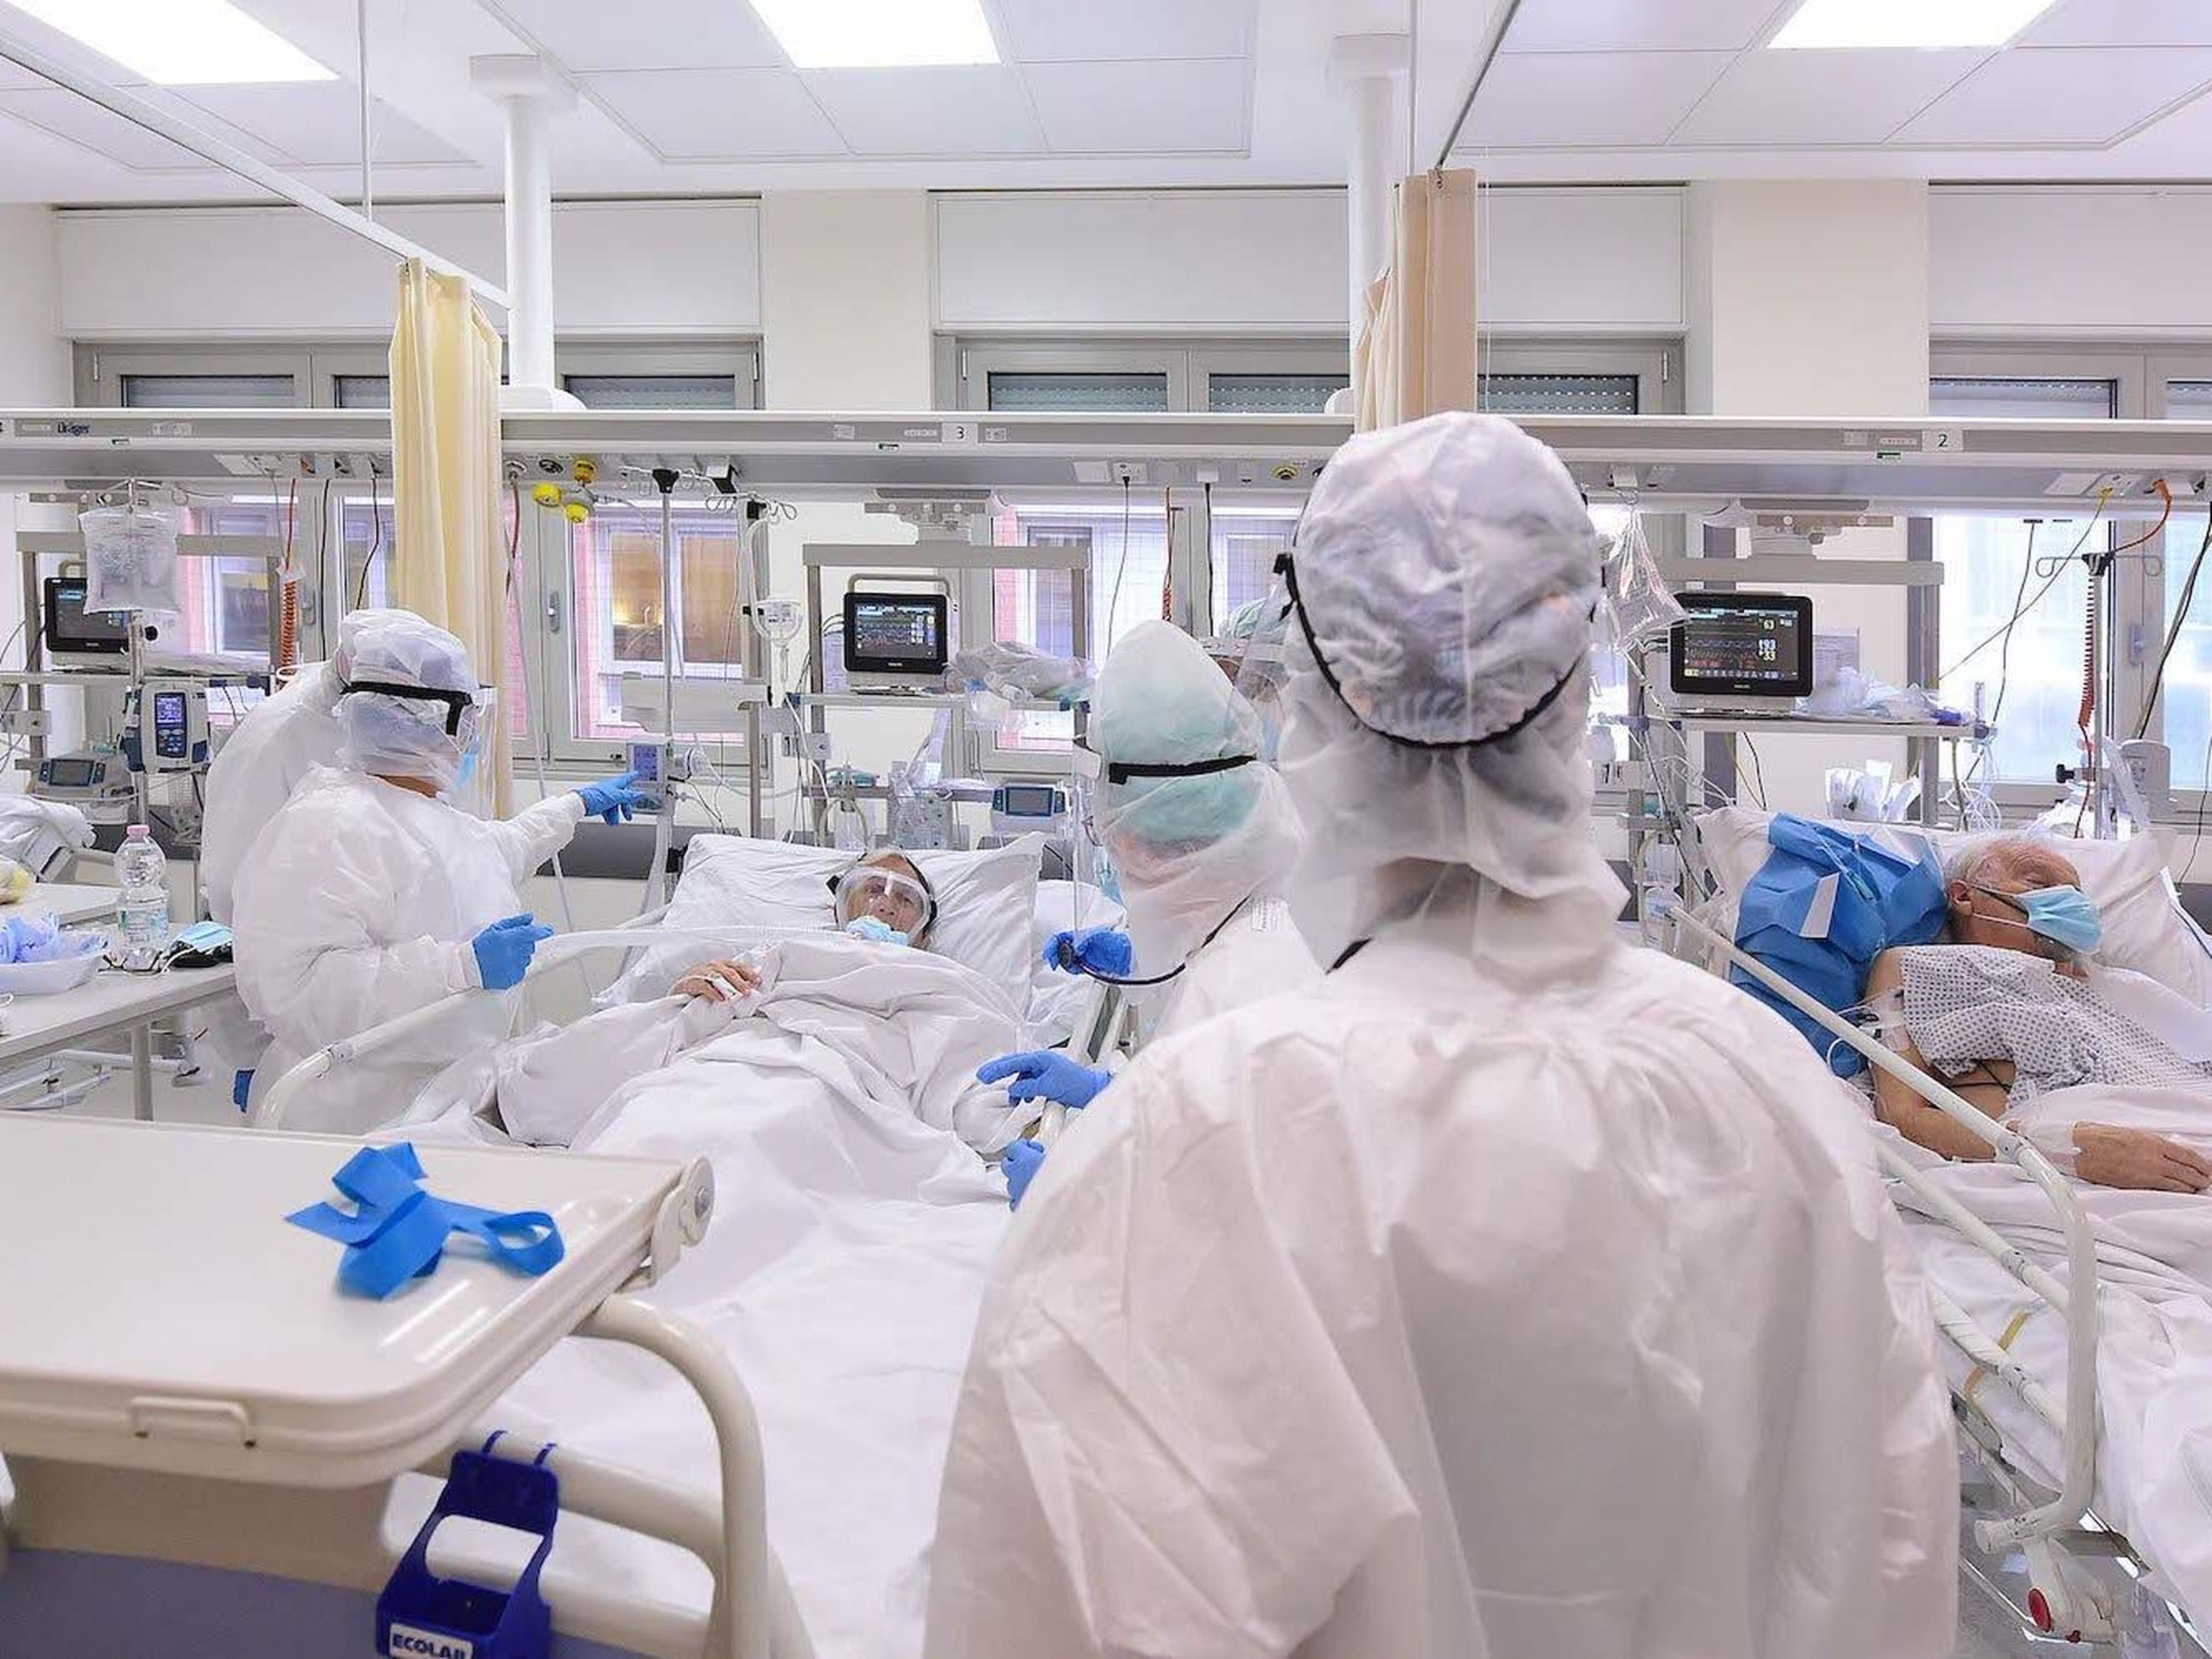 Profesionales médicos con equipo de protección personal tratan a un paciente dentro de una sala COVID-19 en el Hospital de Sant'Orsola el 12 de noviembre de 2020, en Bolonia, Italia.